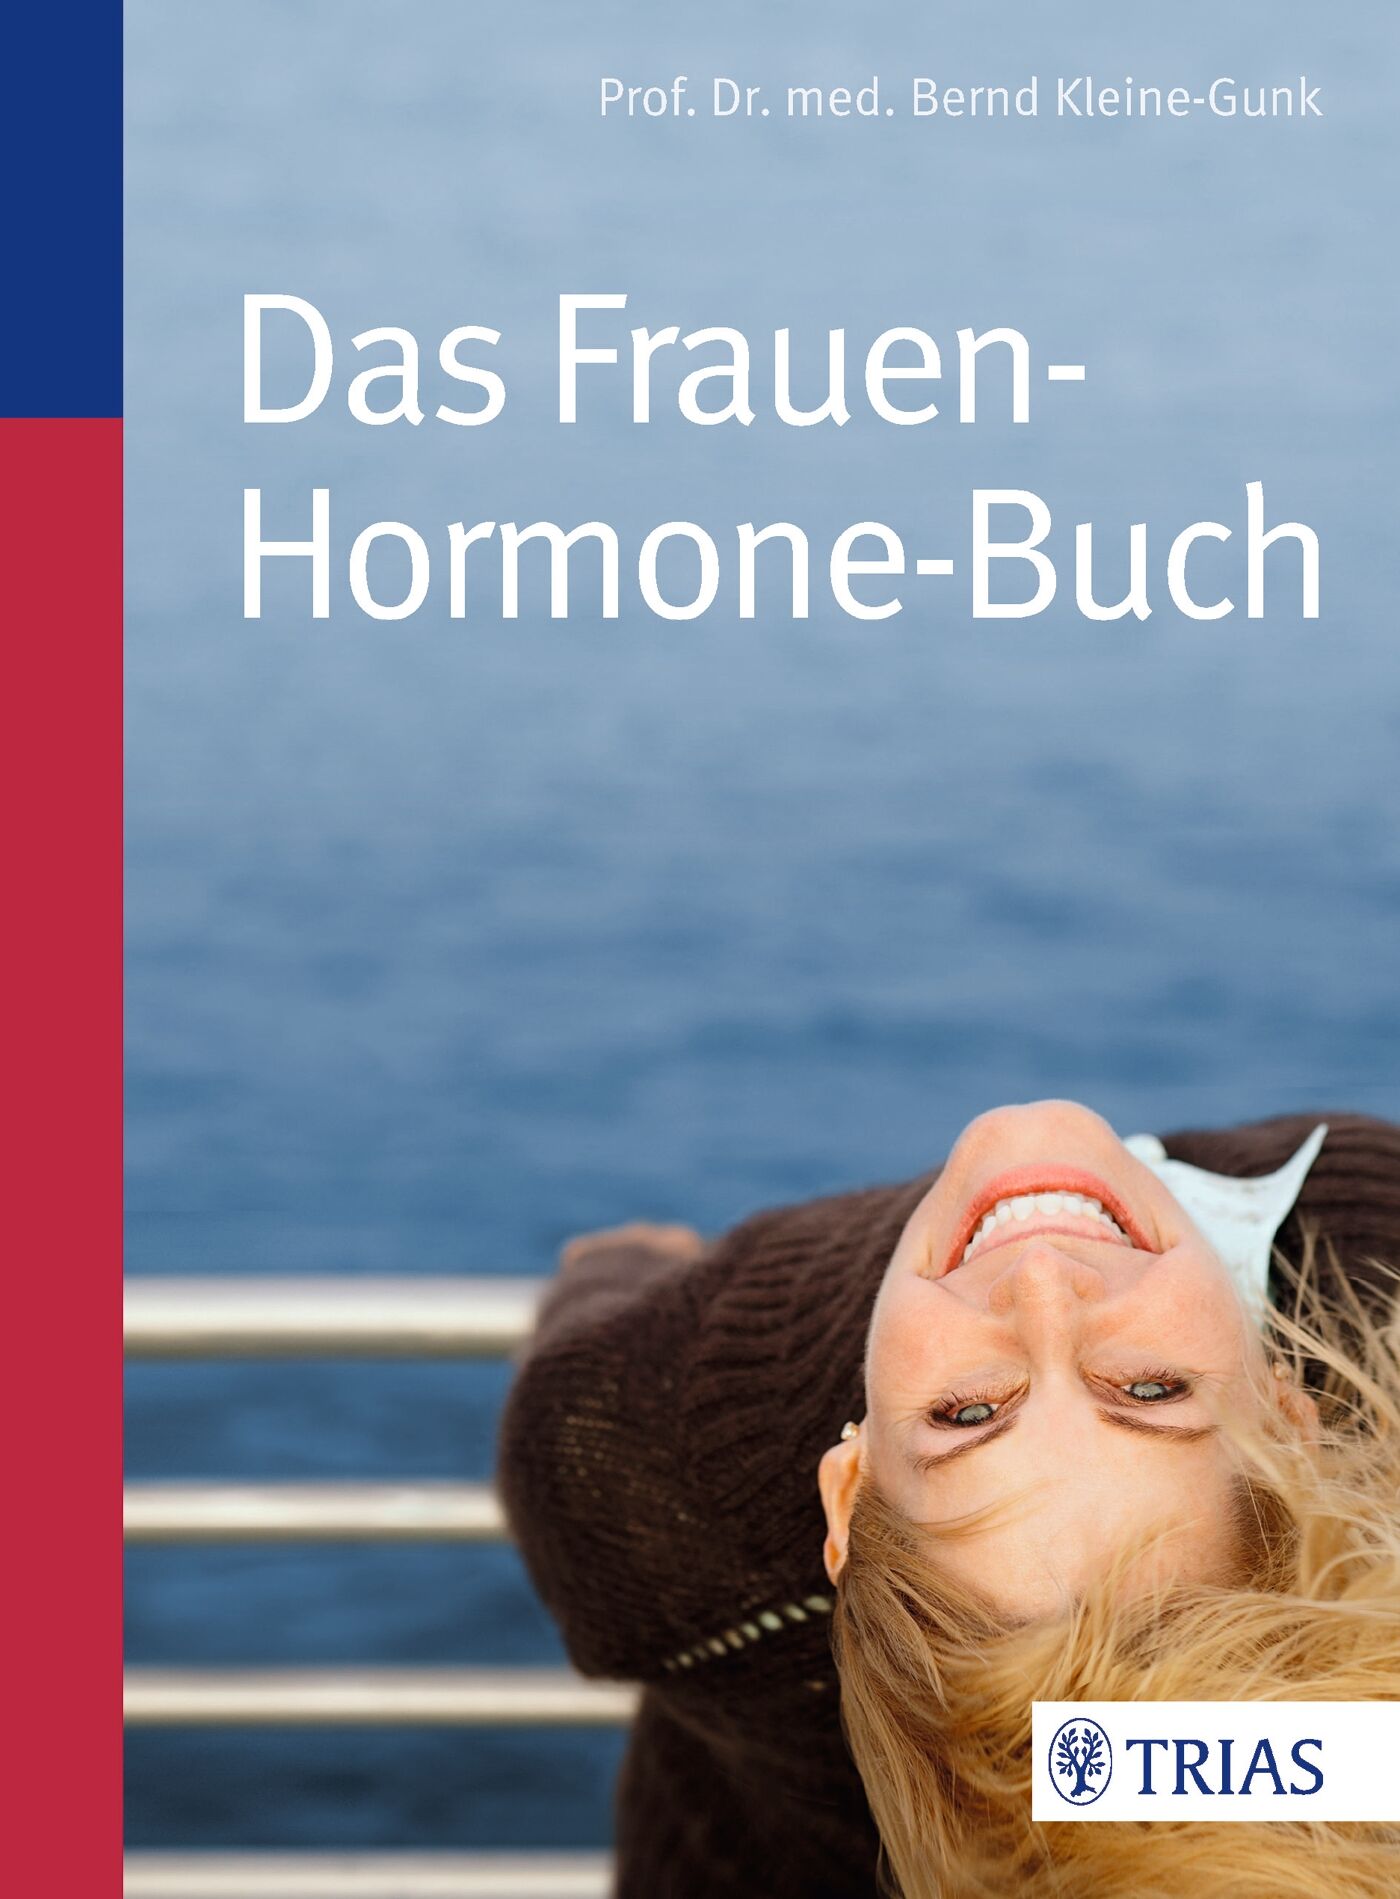 Das Frauen-Hormone-Buch, 9783830460763